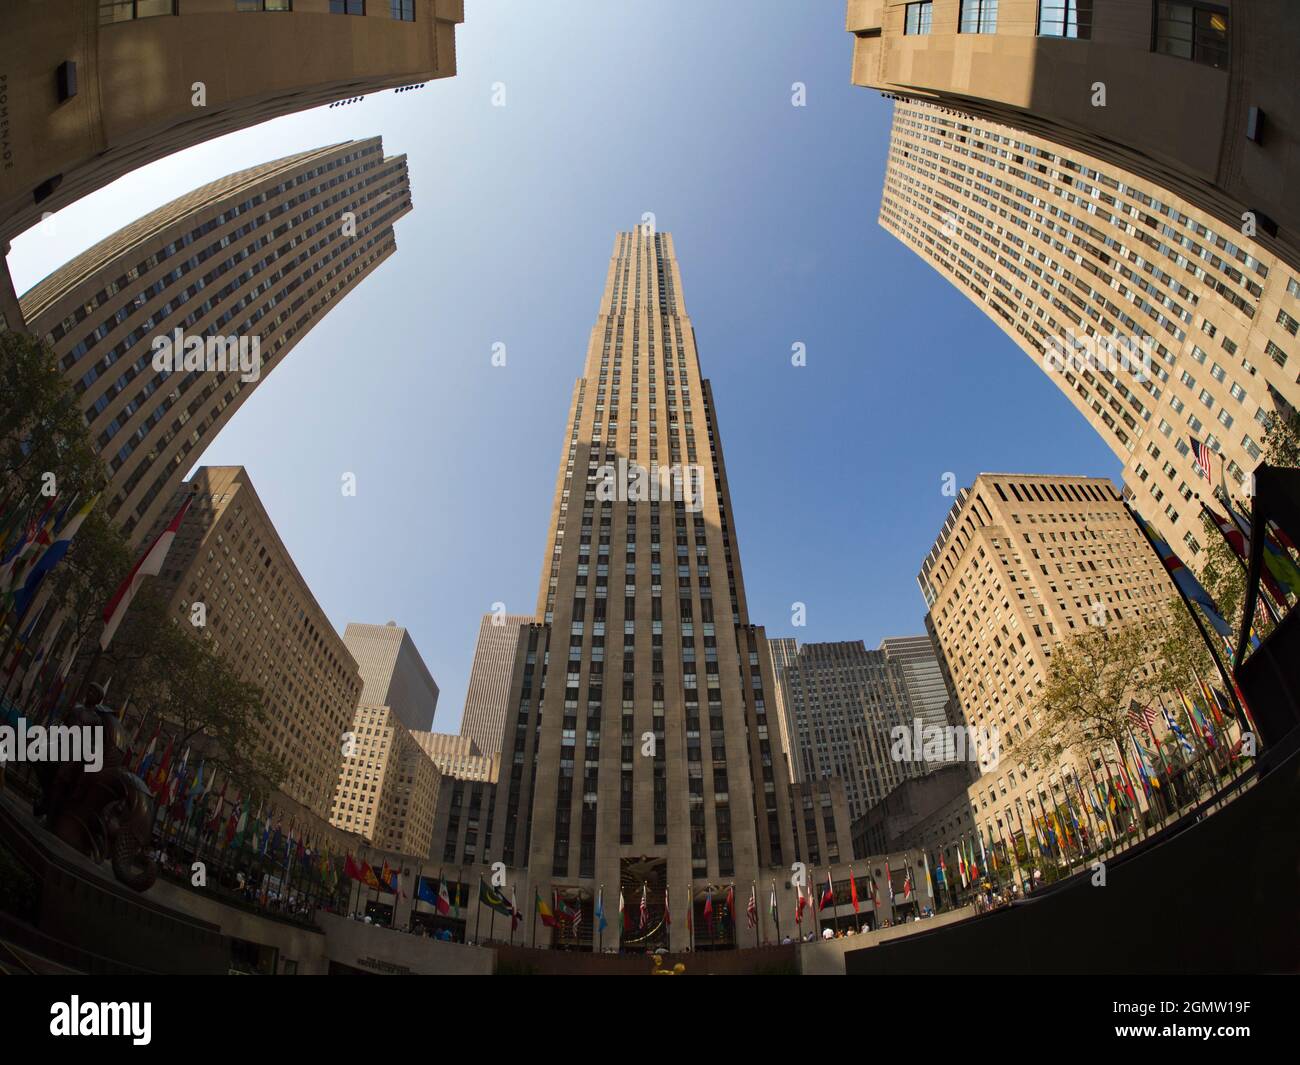 Nueva York, EE.UU. - 11 de abril de 2013; no hay personas a la vista. El Rockefeller Center, una pieza icónica de la grandiosa arquitectura de Nueva York, es un gran complejo de comunicaciones Foto de stock